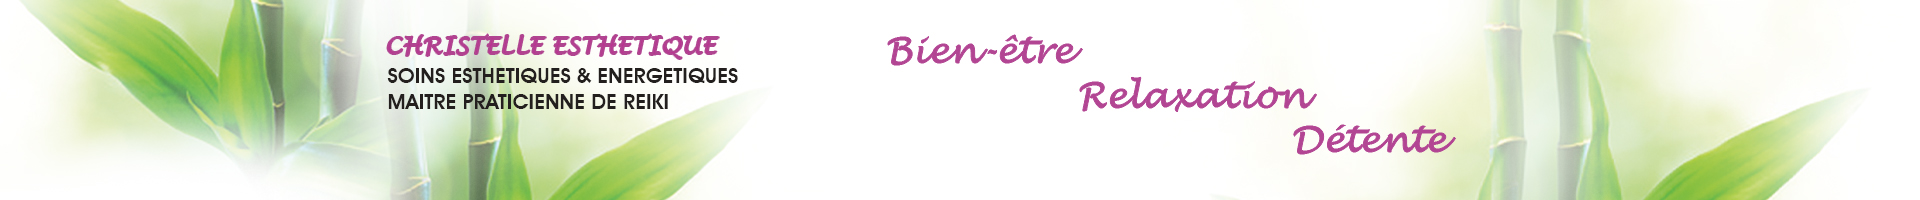 Christelle Esthétique La Chapelle Montmartin - soins esthétiques, reiki, produits LR